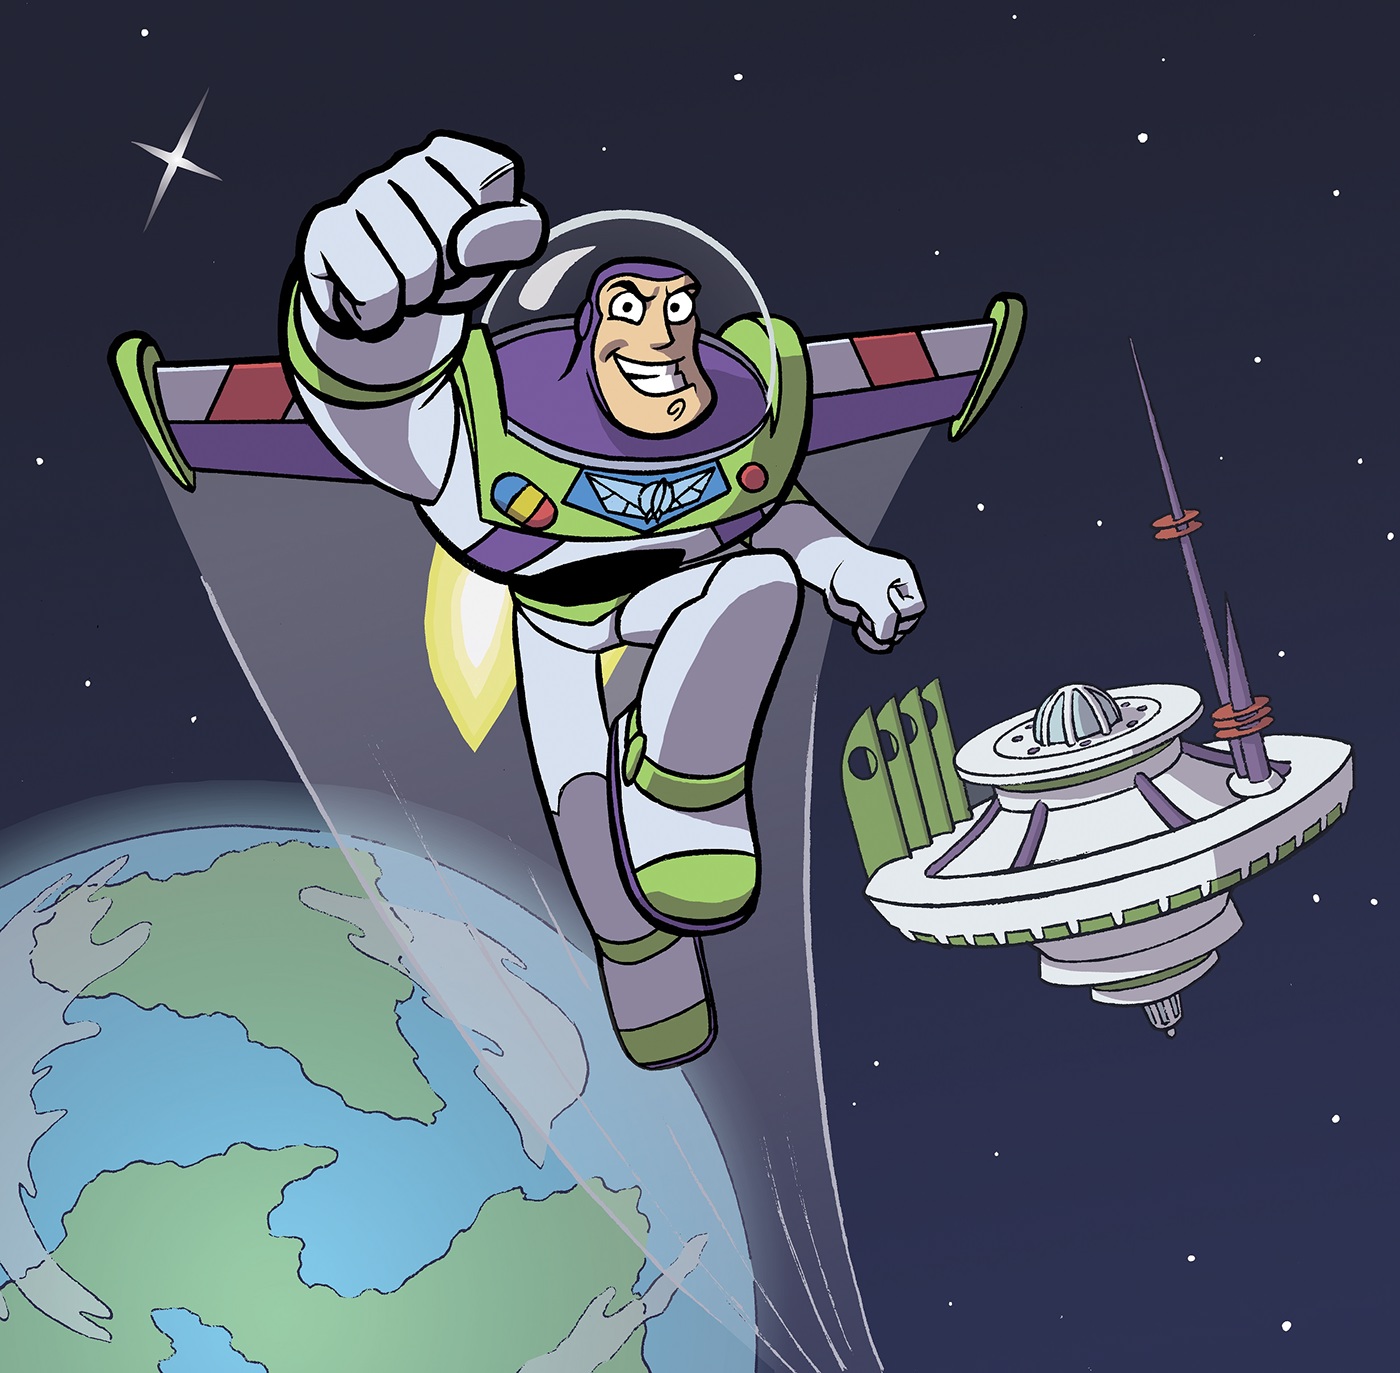 Buzz Lightyear of Star Command fan-art on Behance